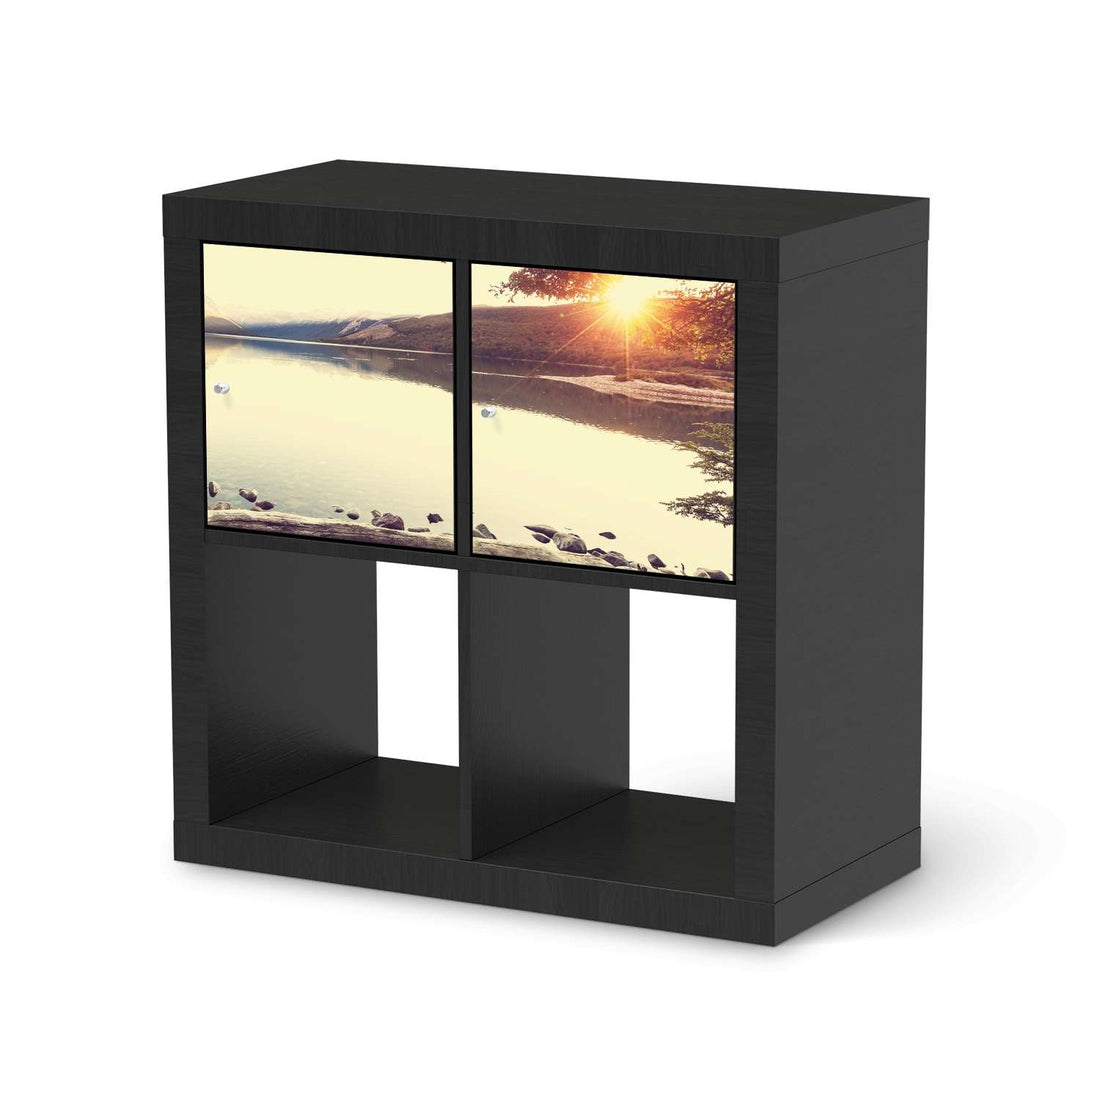 Möbel Klebefolie Seaside Dreams - IKEA Expedit Regal 2 Türen Quer - schwarz